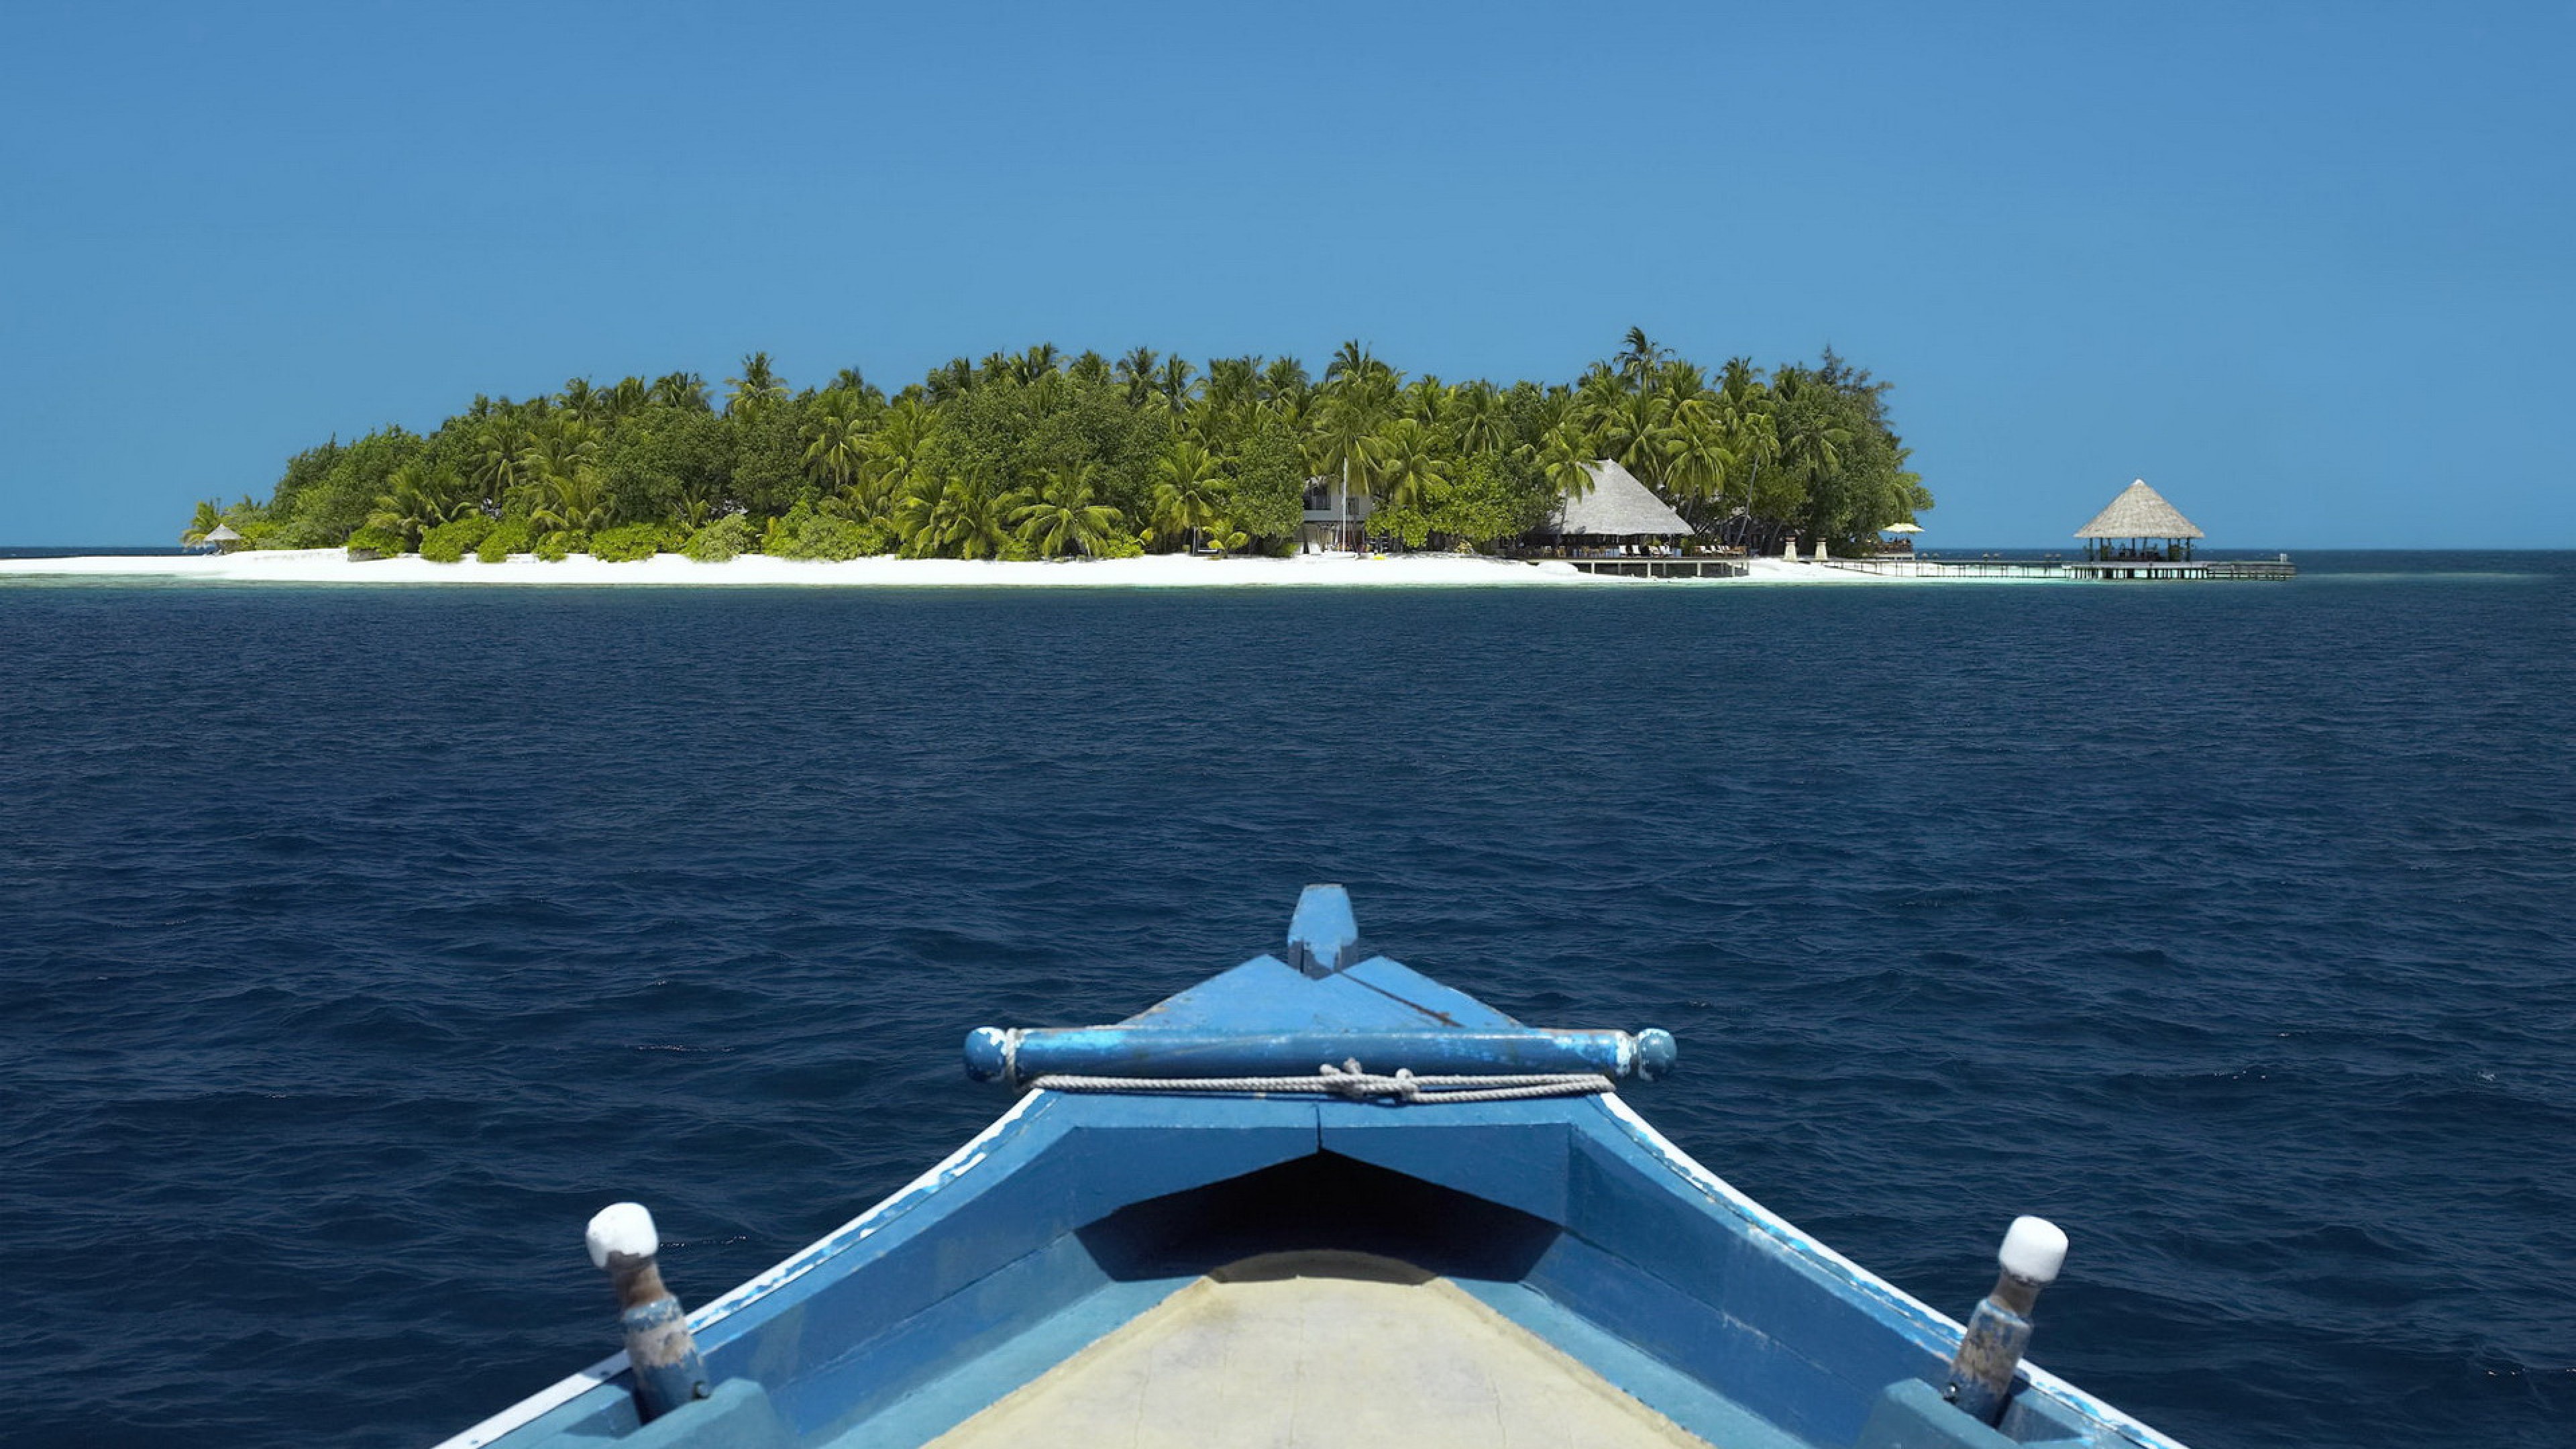 Boat island. Яхта остров. Вид с корабля на берег. Корабль и остров. Корабль Мальдивы.